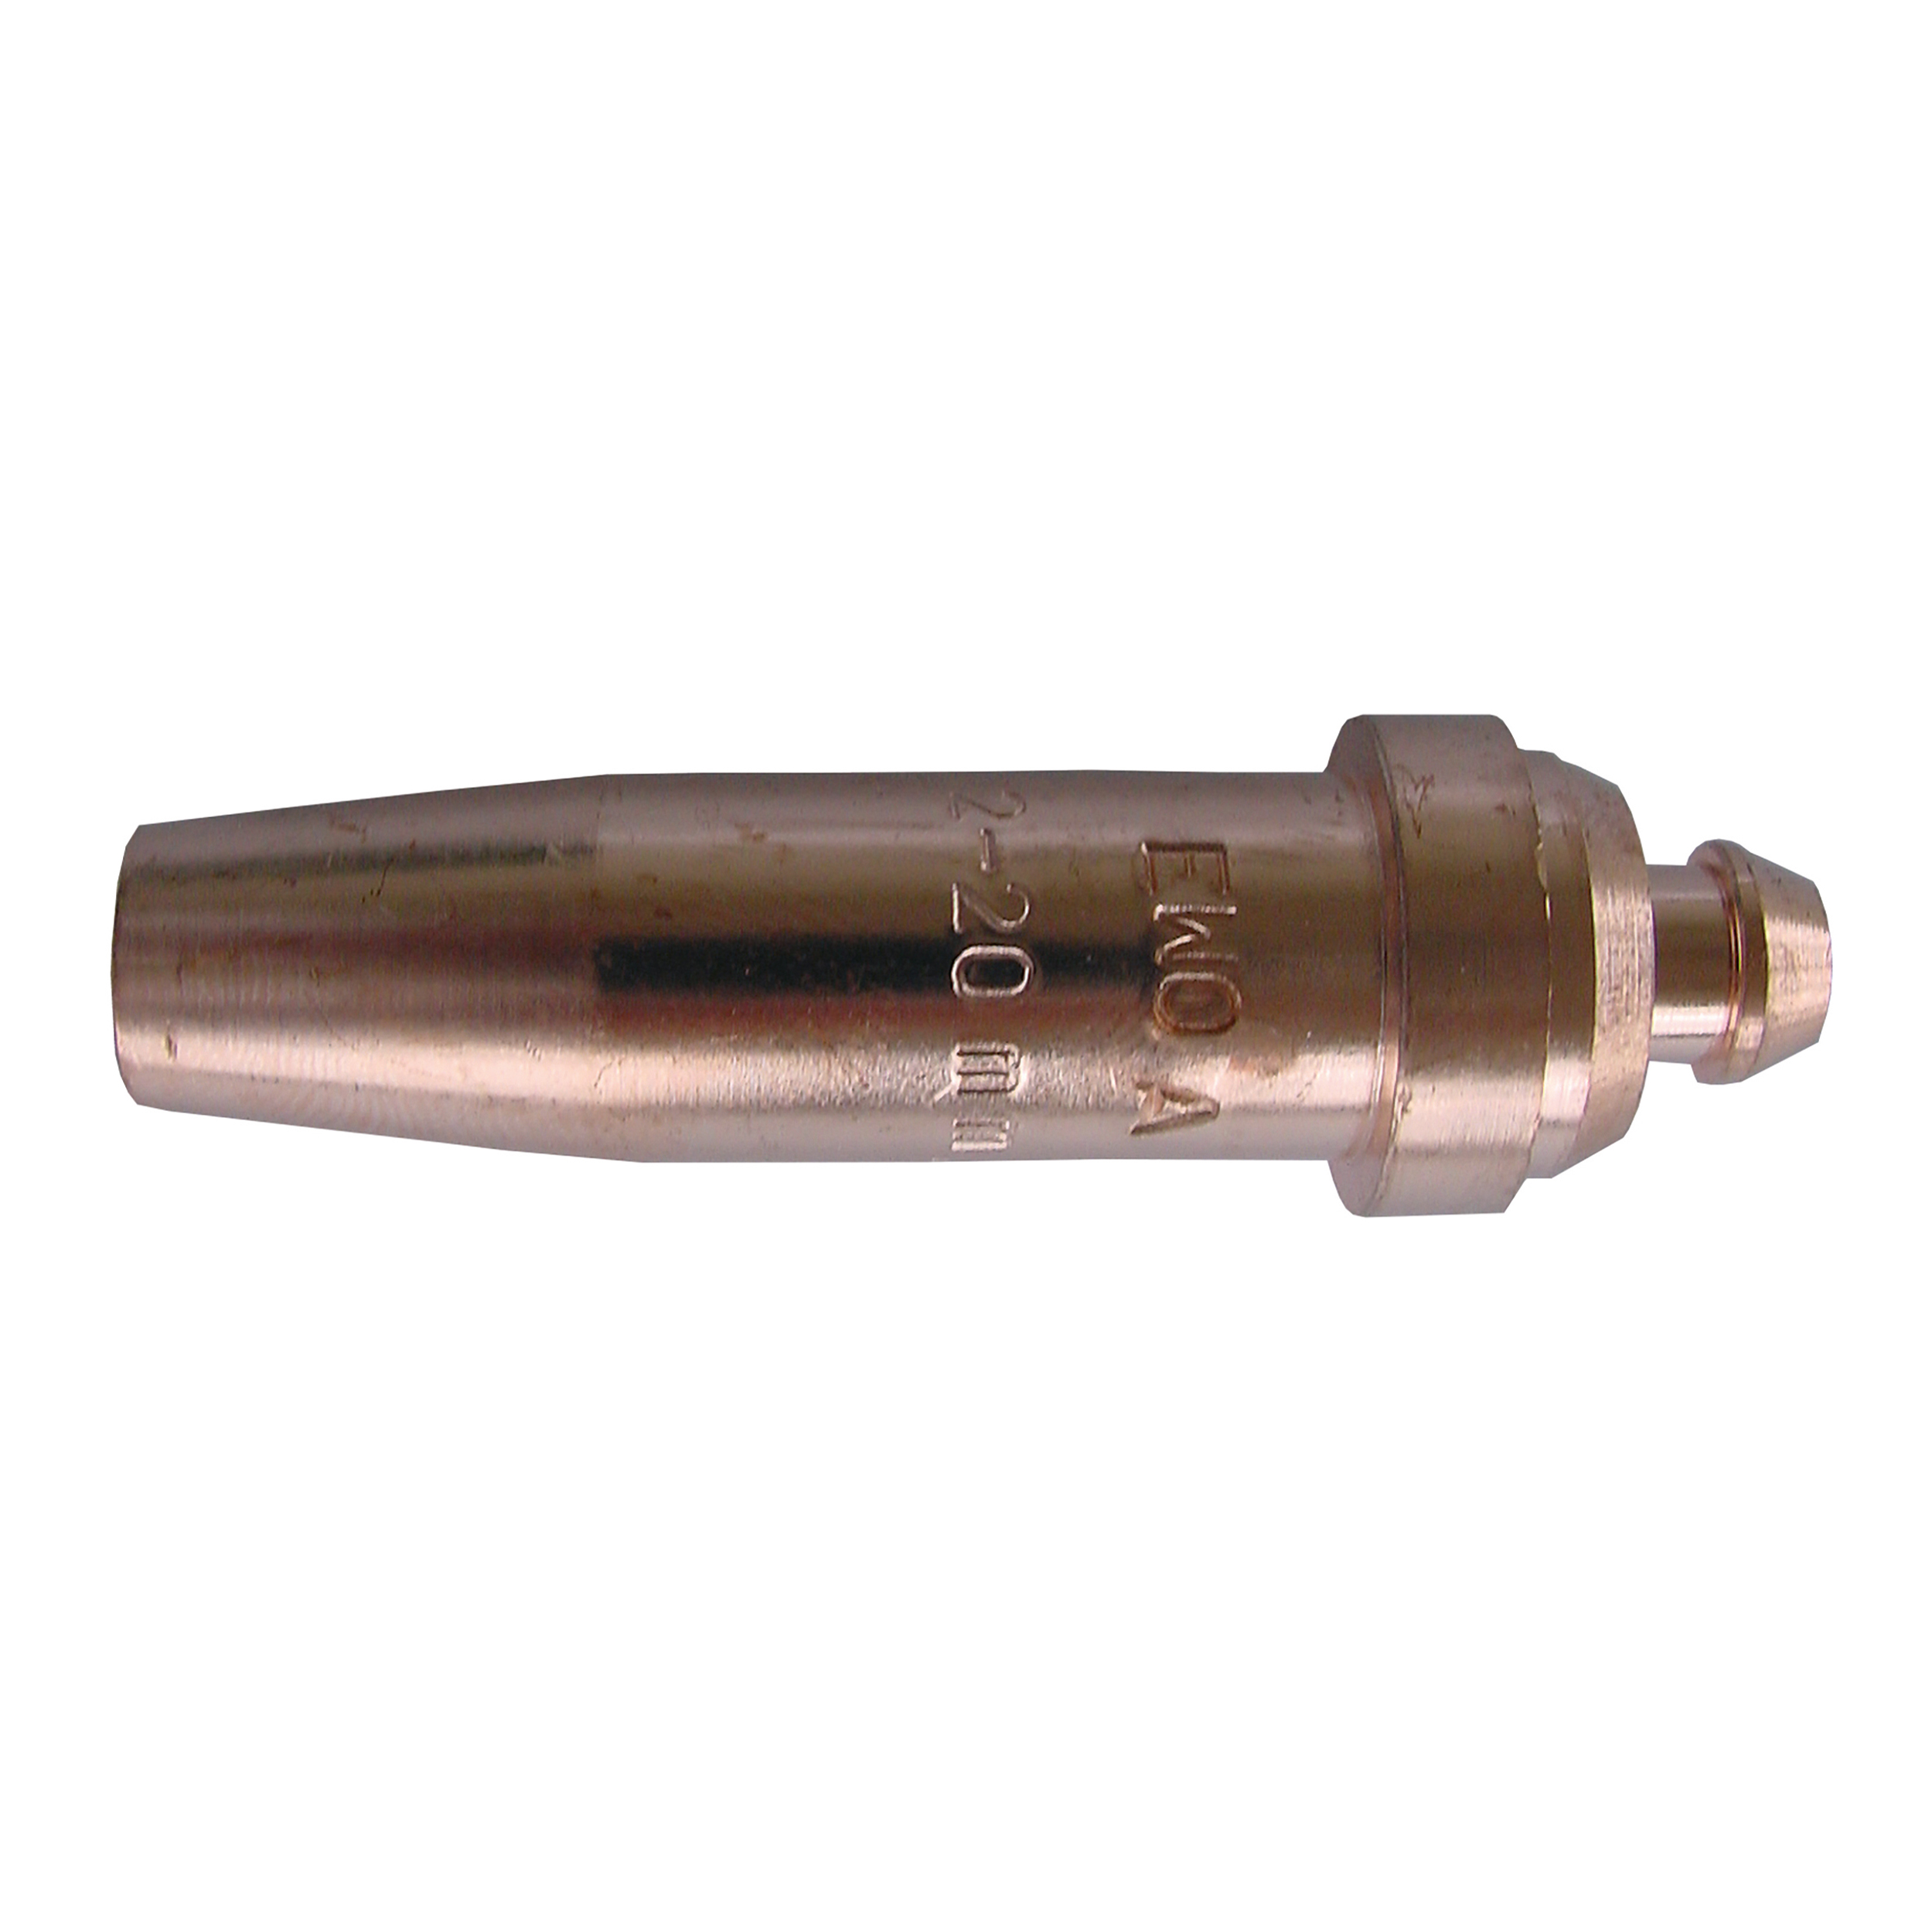 Cutting nozzle/block nozzle, 3 – 20 mm, oxygen pressure: 2 – 4 bar, consumption (l/h): oxygen: 1,400 – 2,000/acetylene: 450 – 600